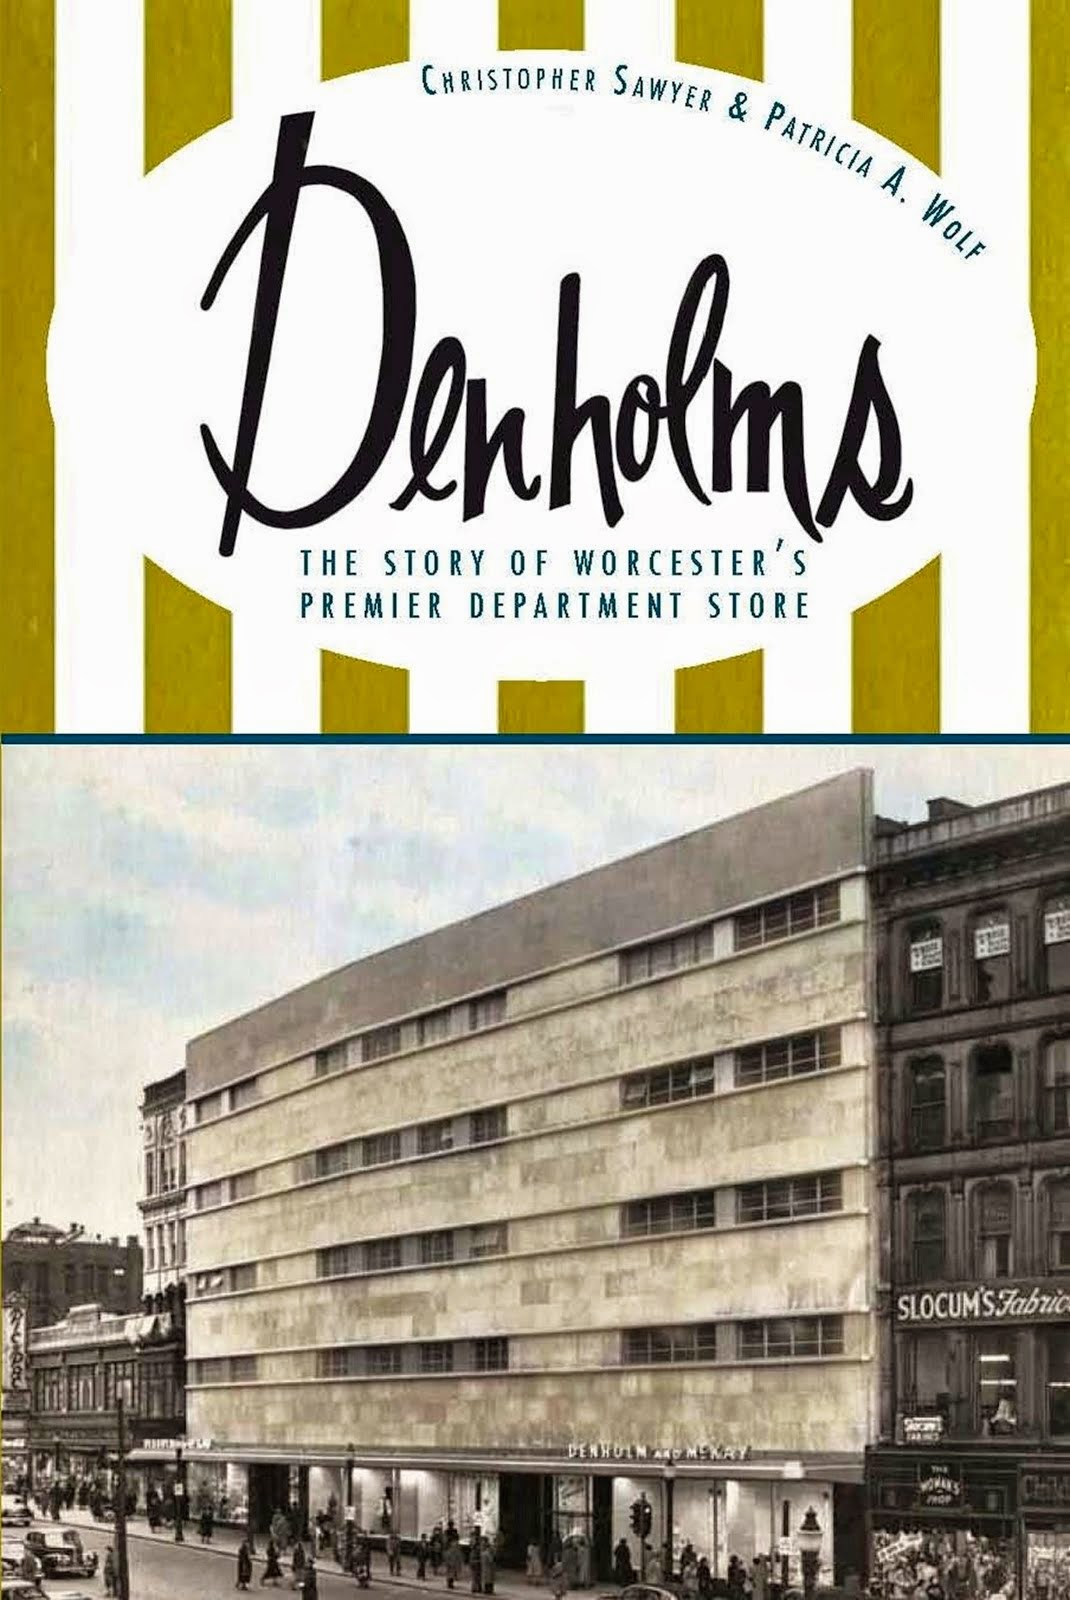 The Denholms book